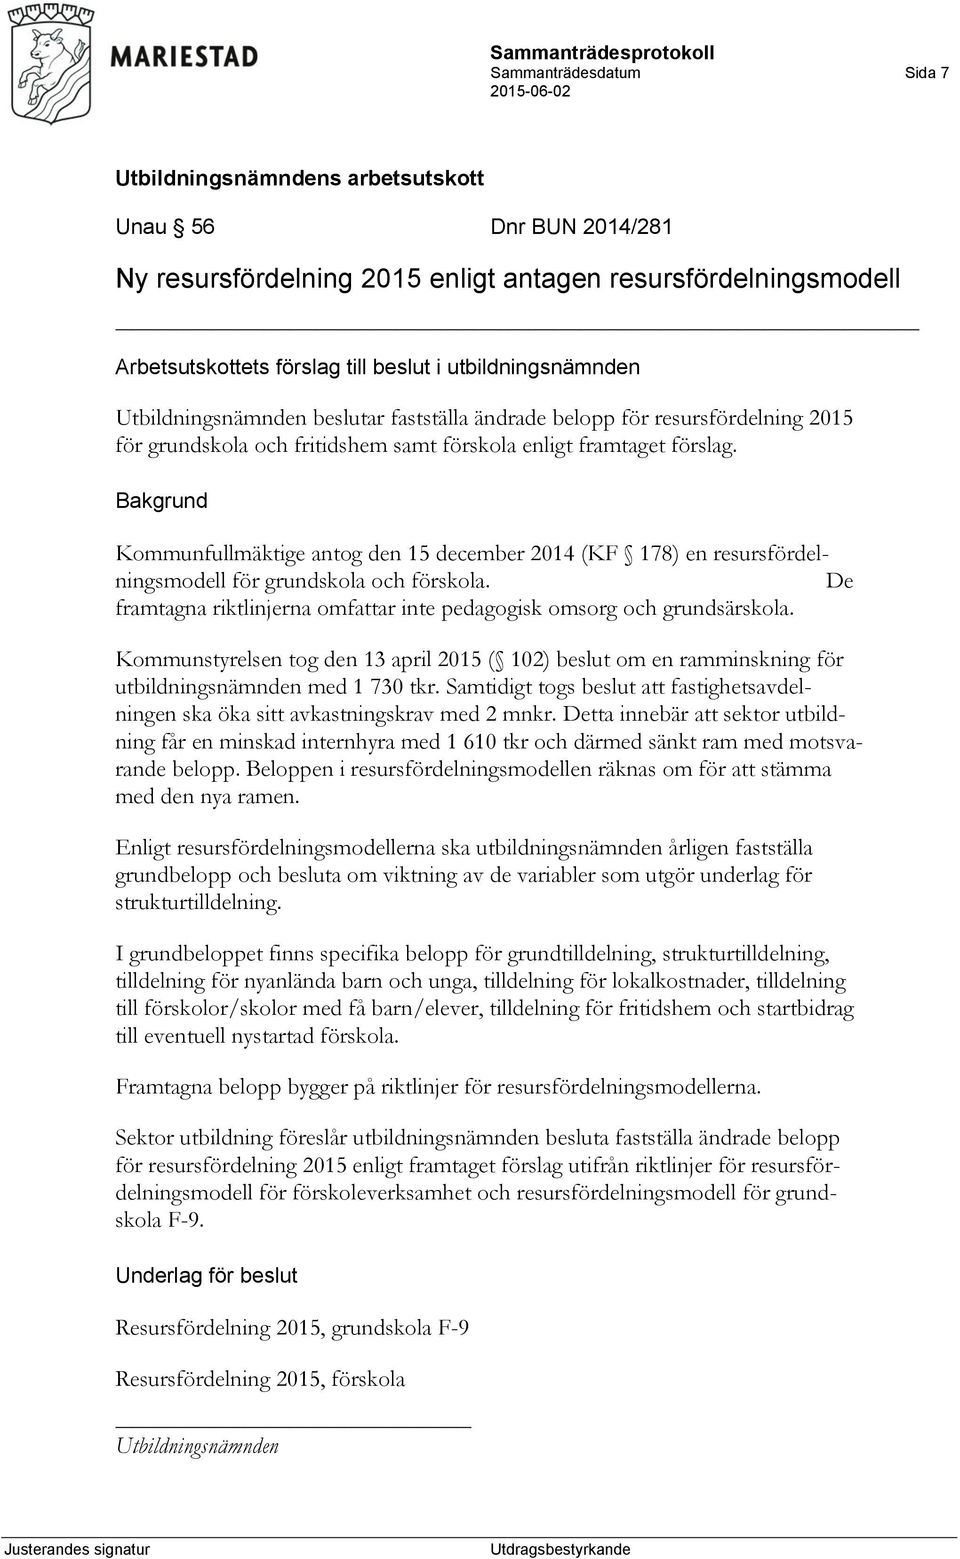 Kommunfullmäktige antog den 15 december 2014 (KF 178) en resursfördelningsmodell för grundskola och förskola. De framtagna riktlinjerna omfattar inte pedagogisk omsorg och grundsärskola.